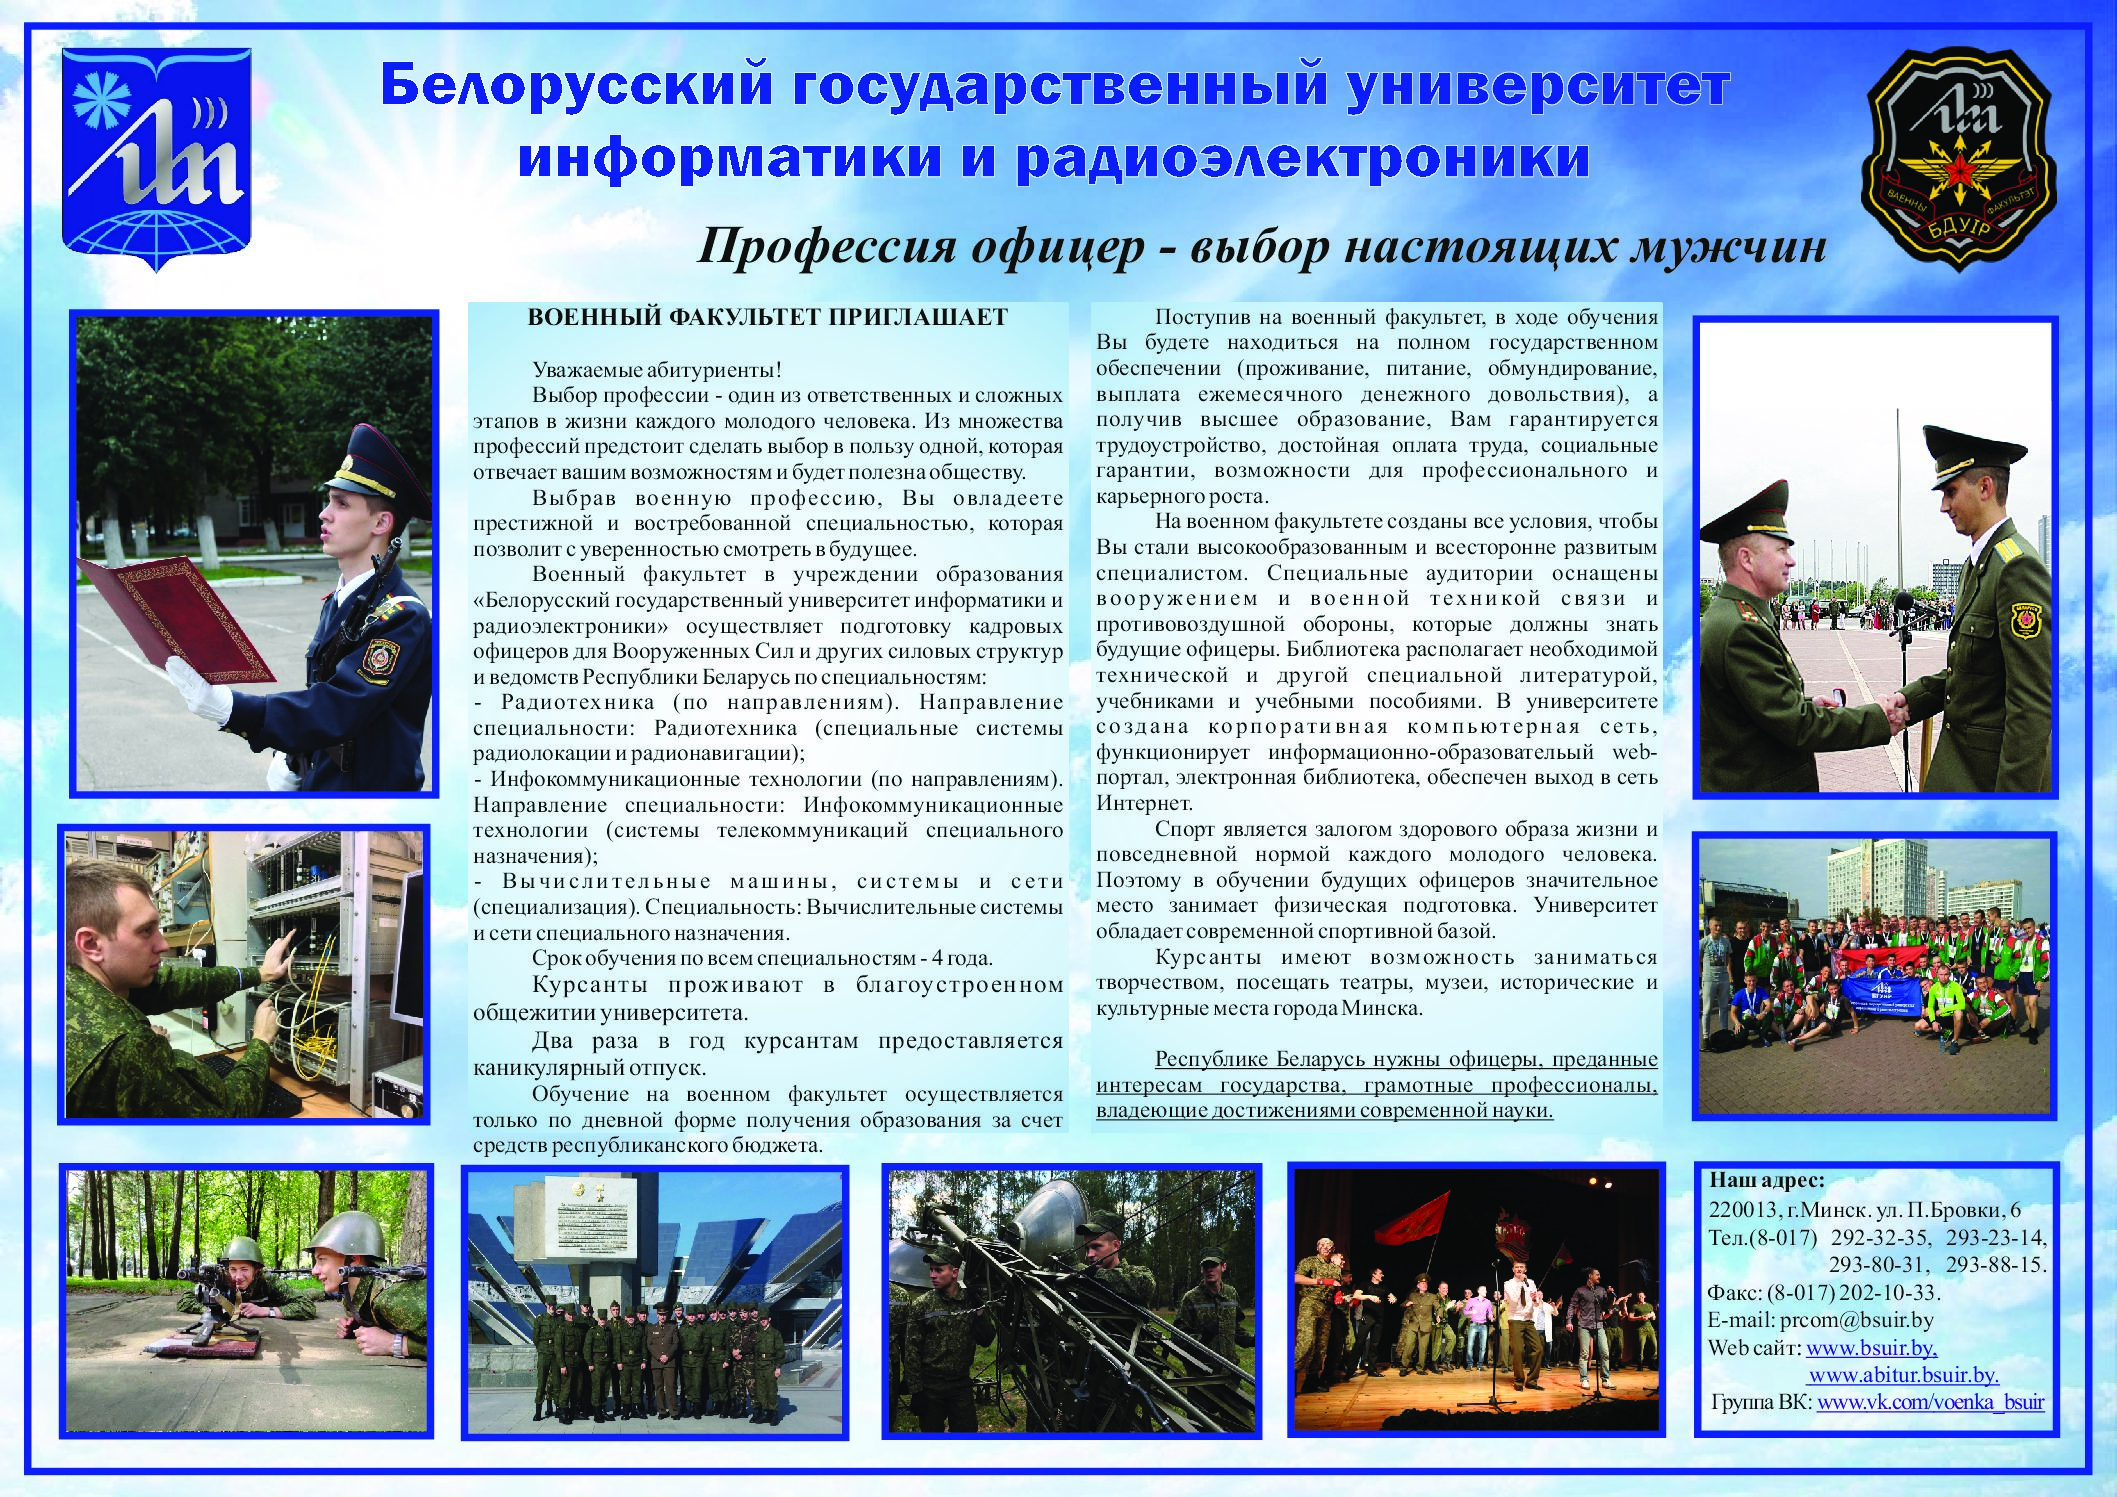 Военный факультет в учреждении образования «Белорусский государственный университет информатики и радиоэлектроники»